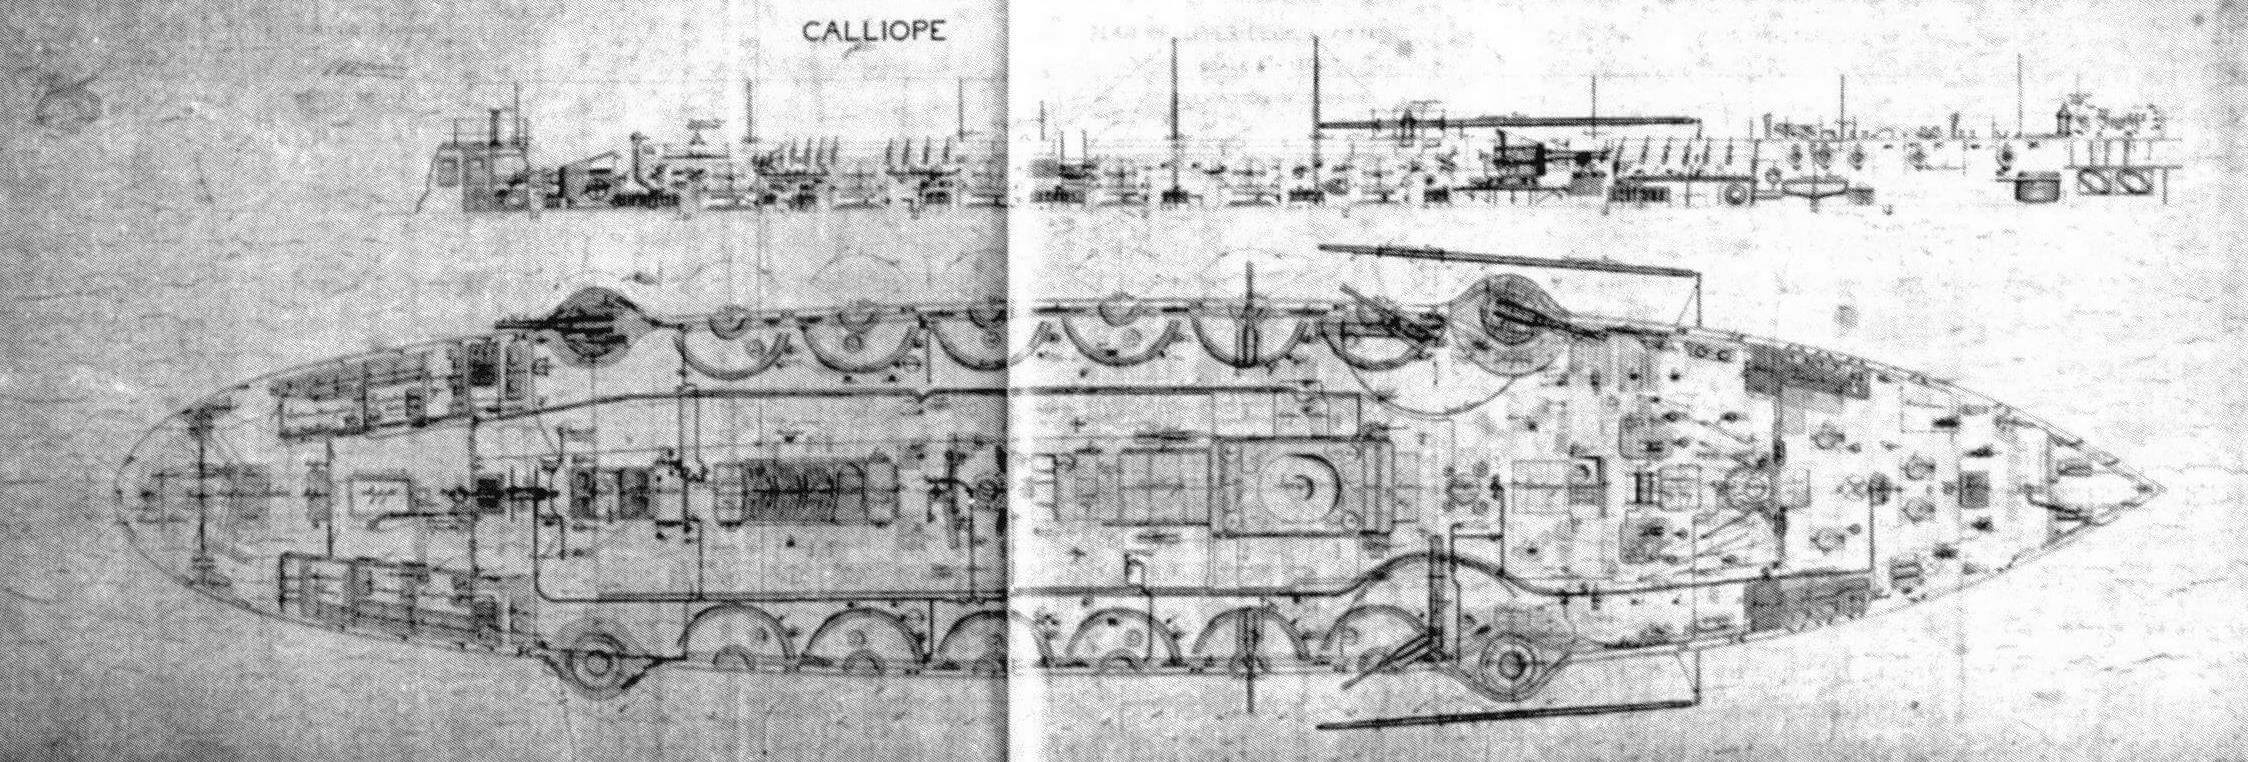 Отчетный чертеж верхней палубы корвета «Каллиопа» (копия подленного чертежа)